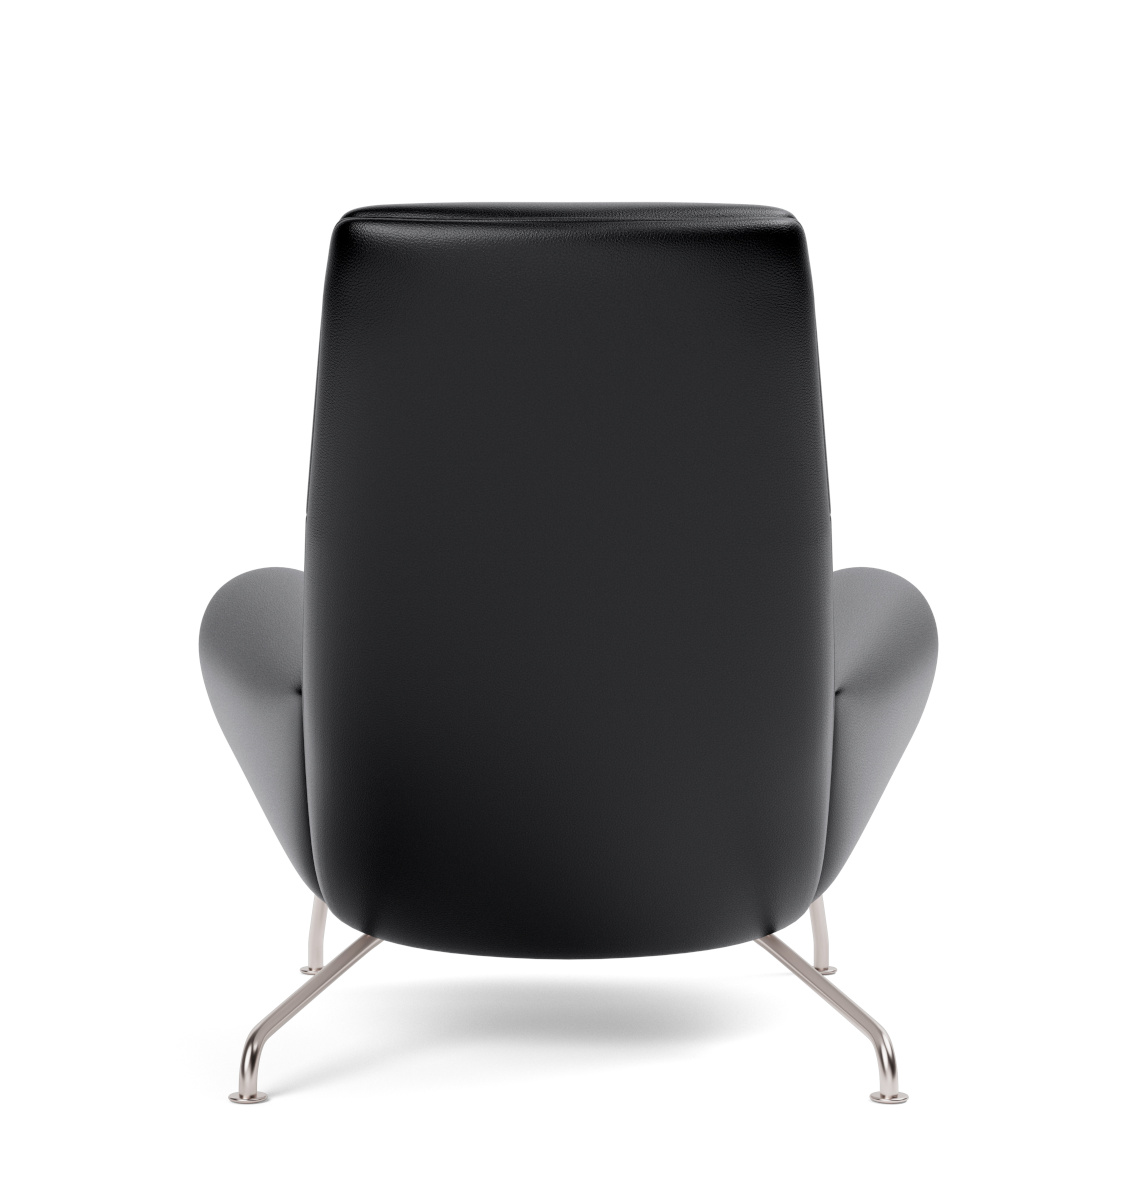 Wegner Queen Chair, brushed steel / leder cera 905 russet brown